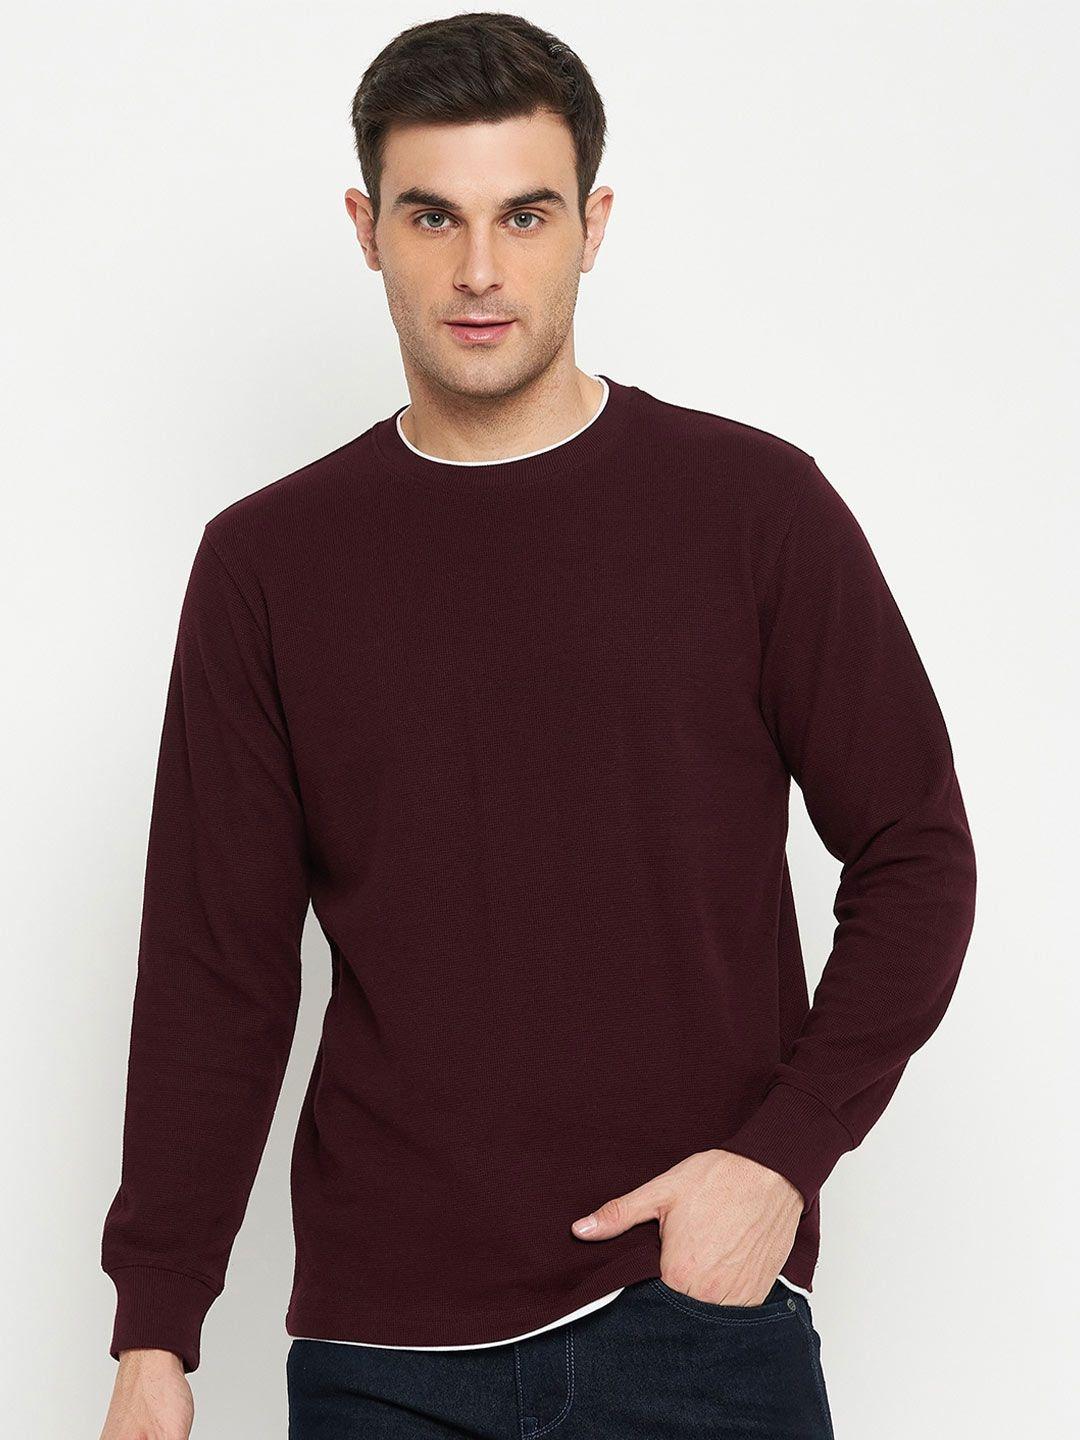 cantabil-round-neck-cotton-sweatshirt